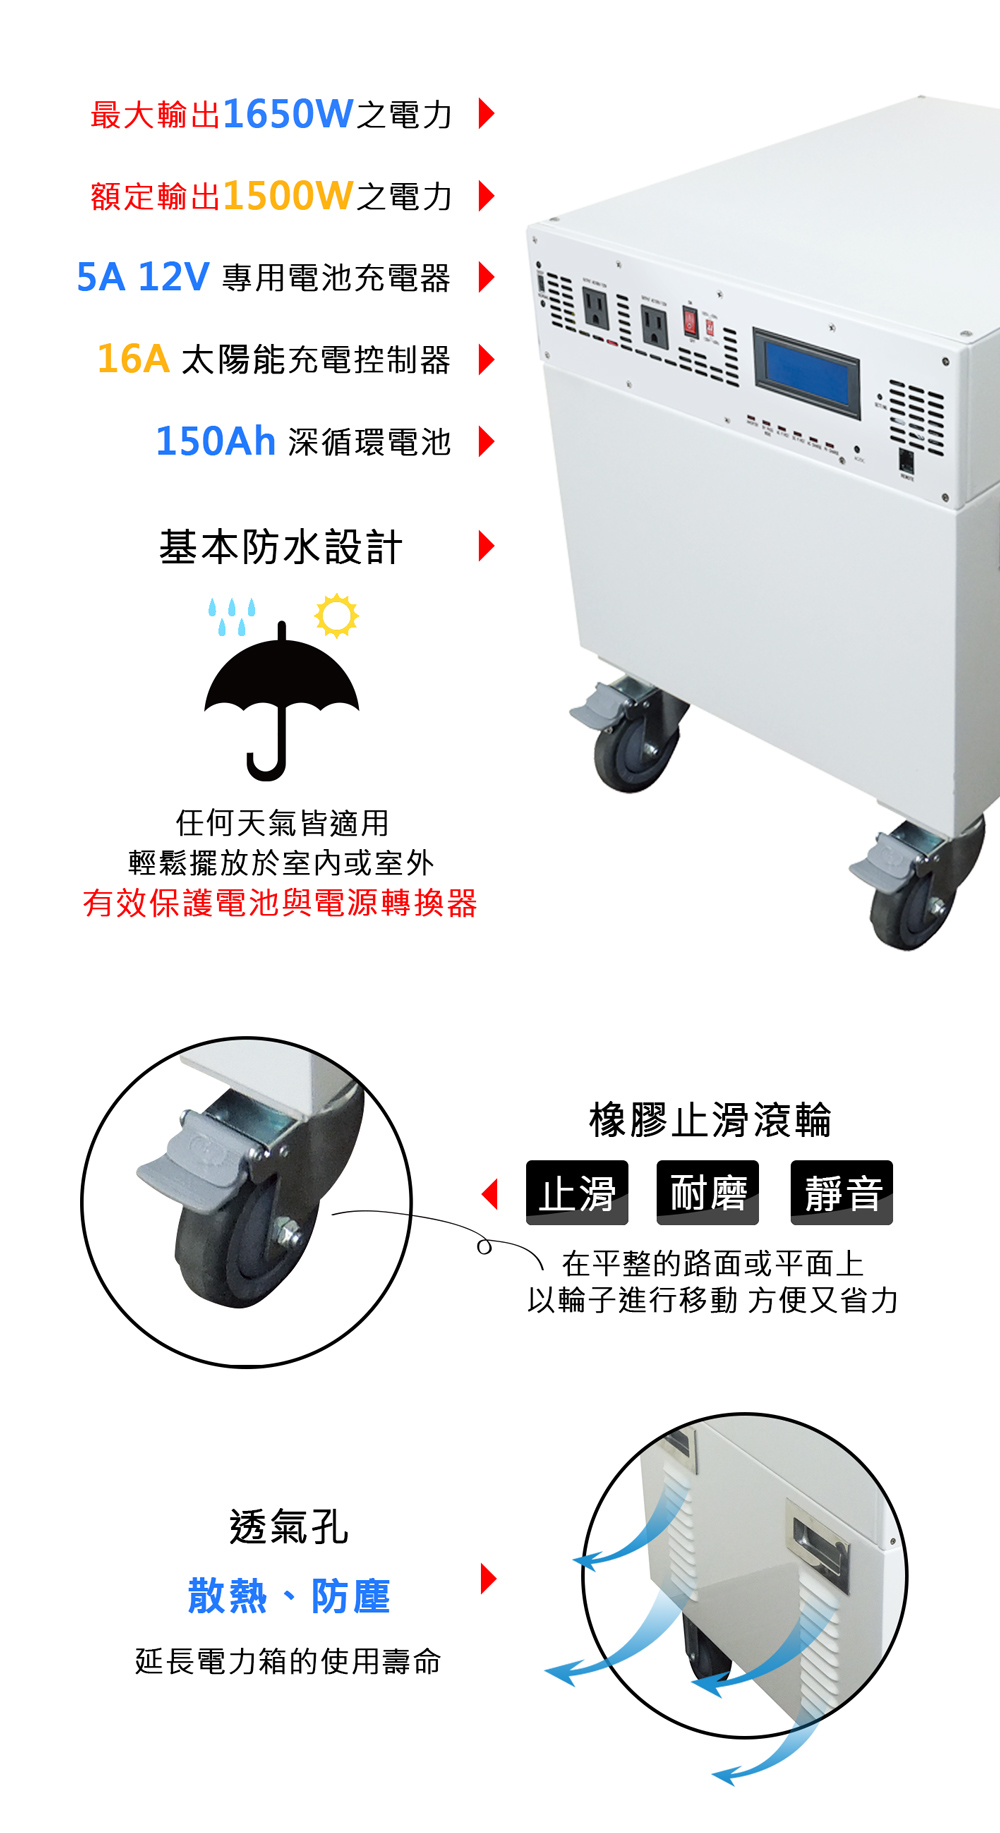 Digisine BOX-1500 多功能150A/1500W電力箱 產品特色描述